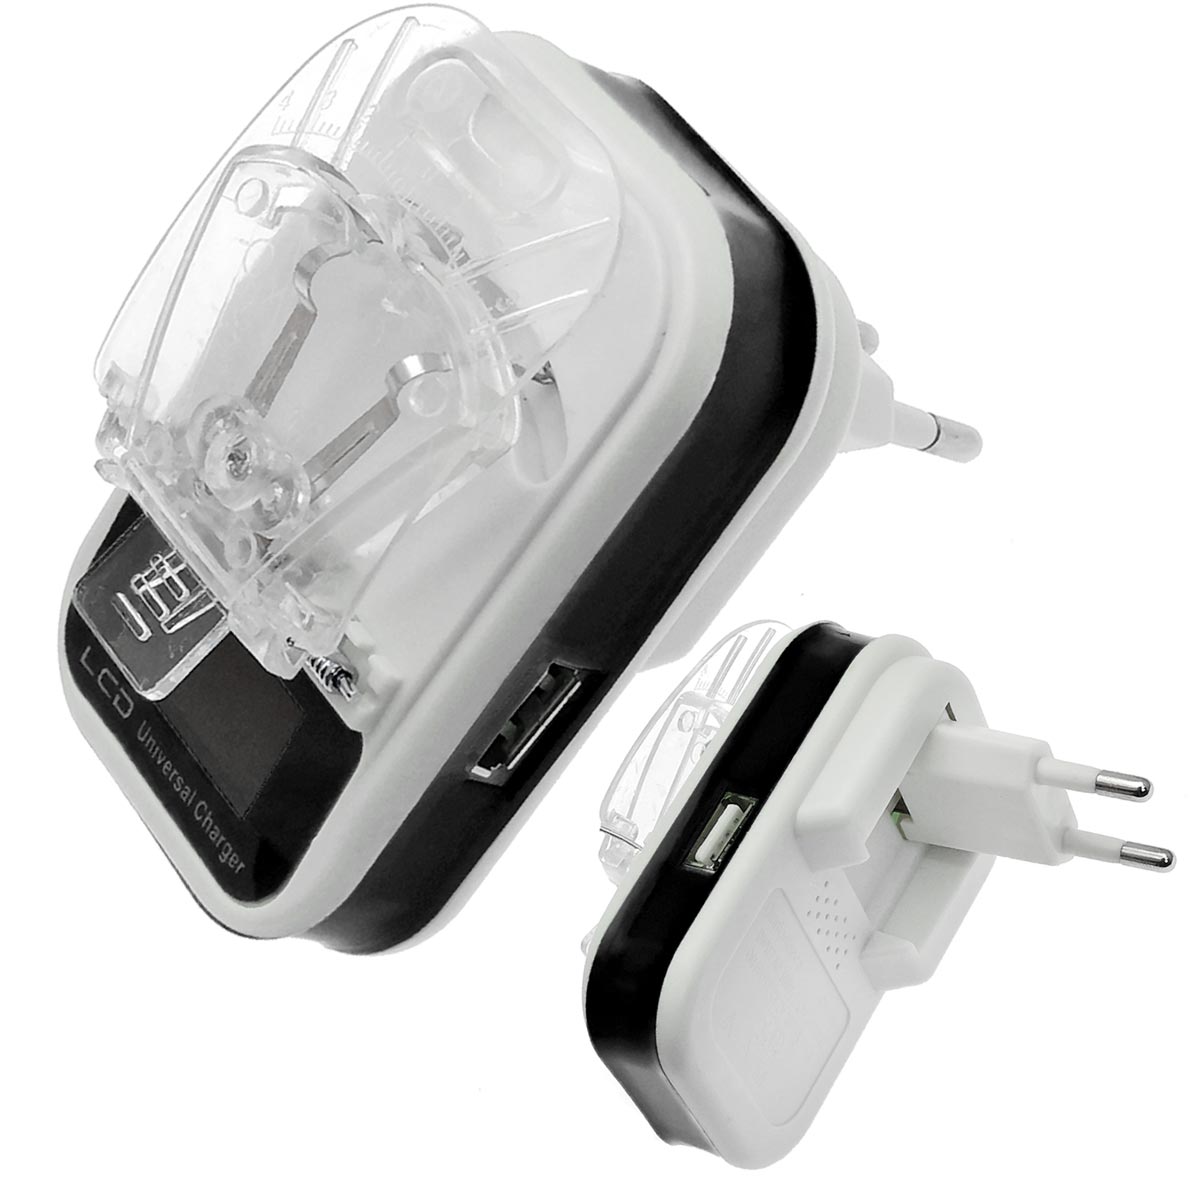 УСЗУ (универсальное сетевое зарядное устройство) LP-120 Лягушка с LCD дисплеем и USB выходом 5V-1.2A, классическая, цвет бело черный